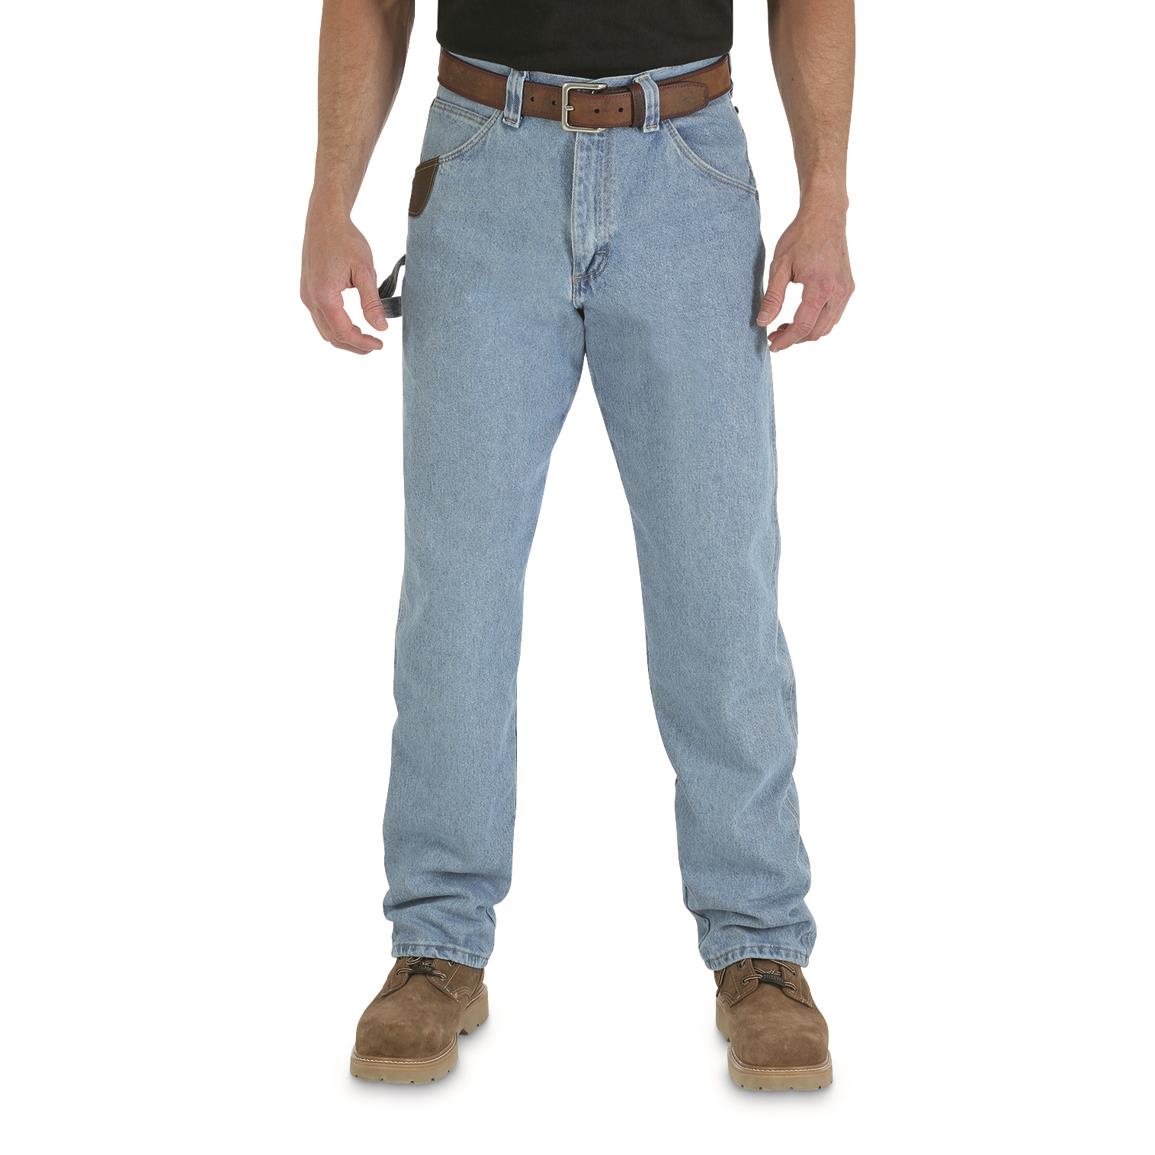 wrangler 20x carpenter jeans mens